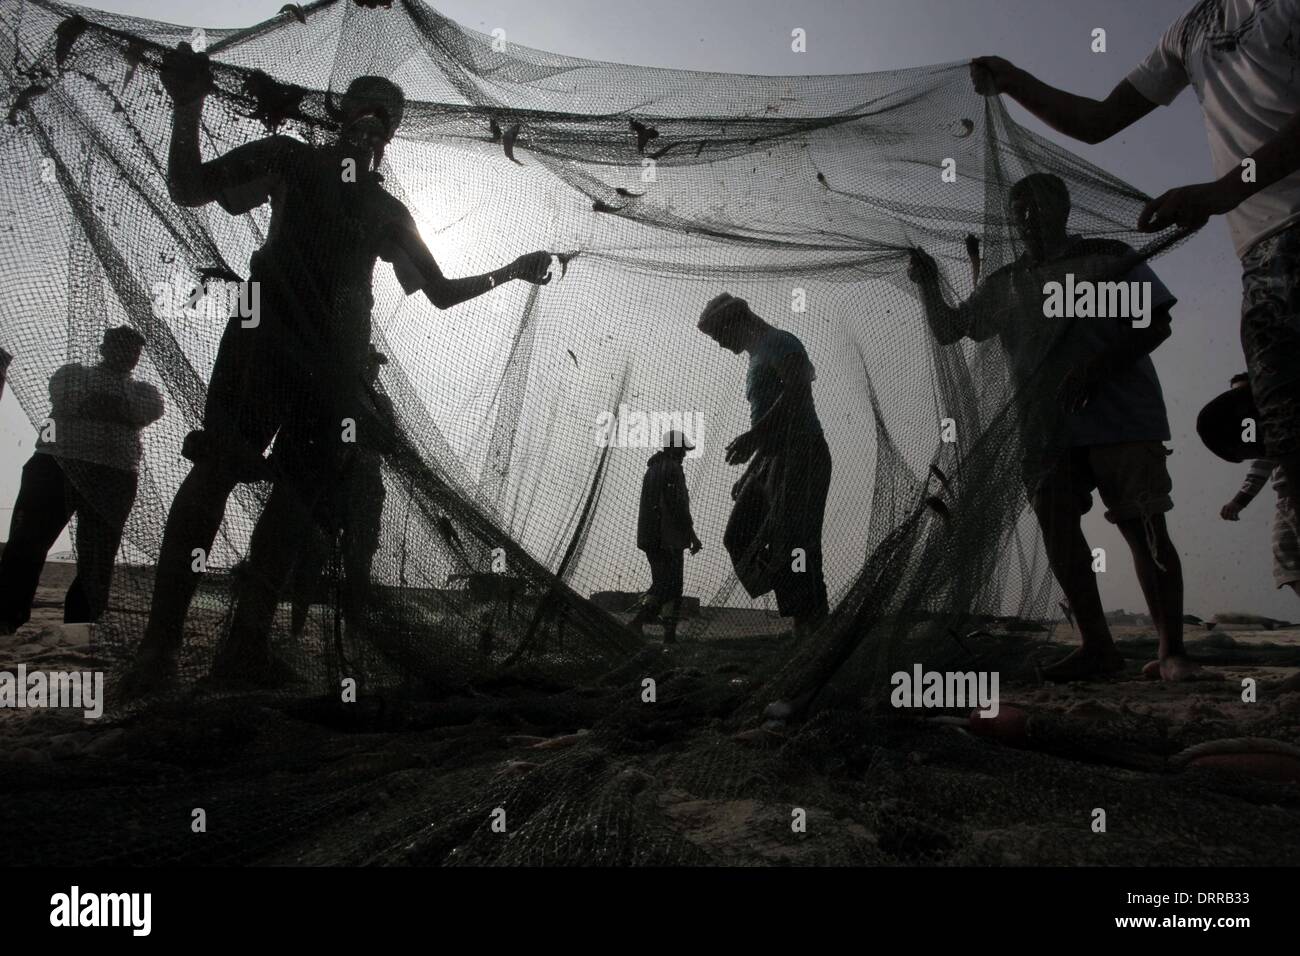 Gaza-Stadt, Gazastreifen, Palästinensische Gebiete. 18. November 2013. Palästinensische Fischer sammeln Fische aus ihrem Netz am Strand von Gaza-Stadt, am 18. November 2013. Israel beschränkt die Fischereizone auf drei Seemeilen nach der Entführung des israelischen Soldaten Gilad Shalit im Jahr 2007. Die Oslo-Abkommen 1993 mit der palästinensischen Autonomiebehörde unterzeichneten besagen, dass Gaza s Fischereizone auf 20 Seemeilen auszudehnen. Die Zone wurde dann erweitert auf sechs Seemeilen als Bestandteil der ägyptischen vermittelten Waffenstillstand im November 2012, aber Israel zeitweise reduzieren auf drei Seemeilen jedes tim Stockfoto